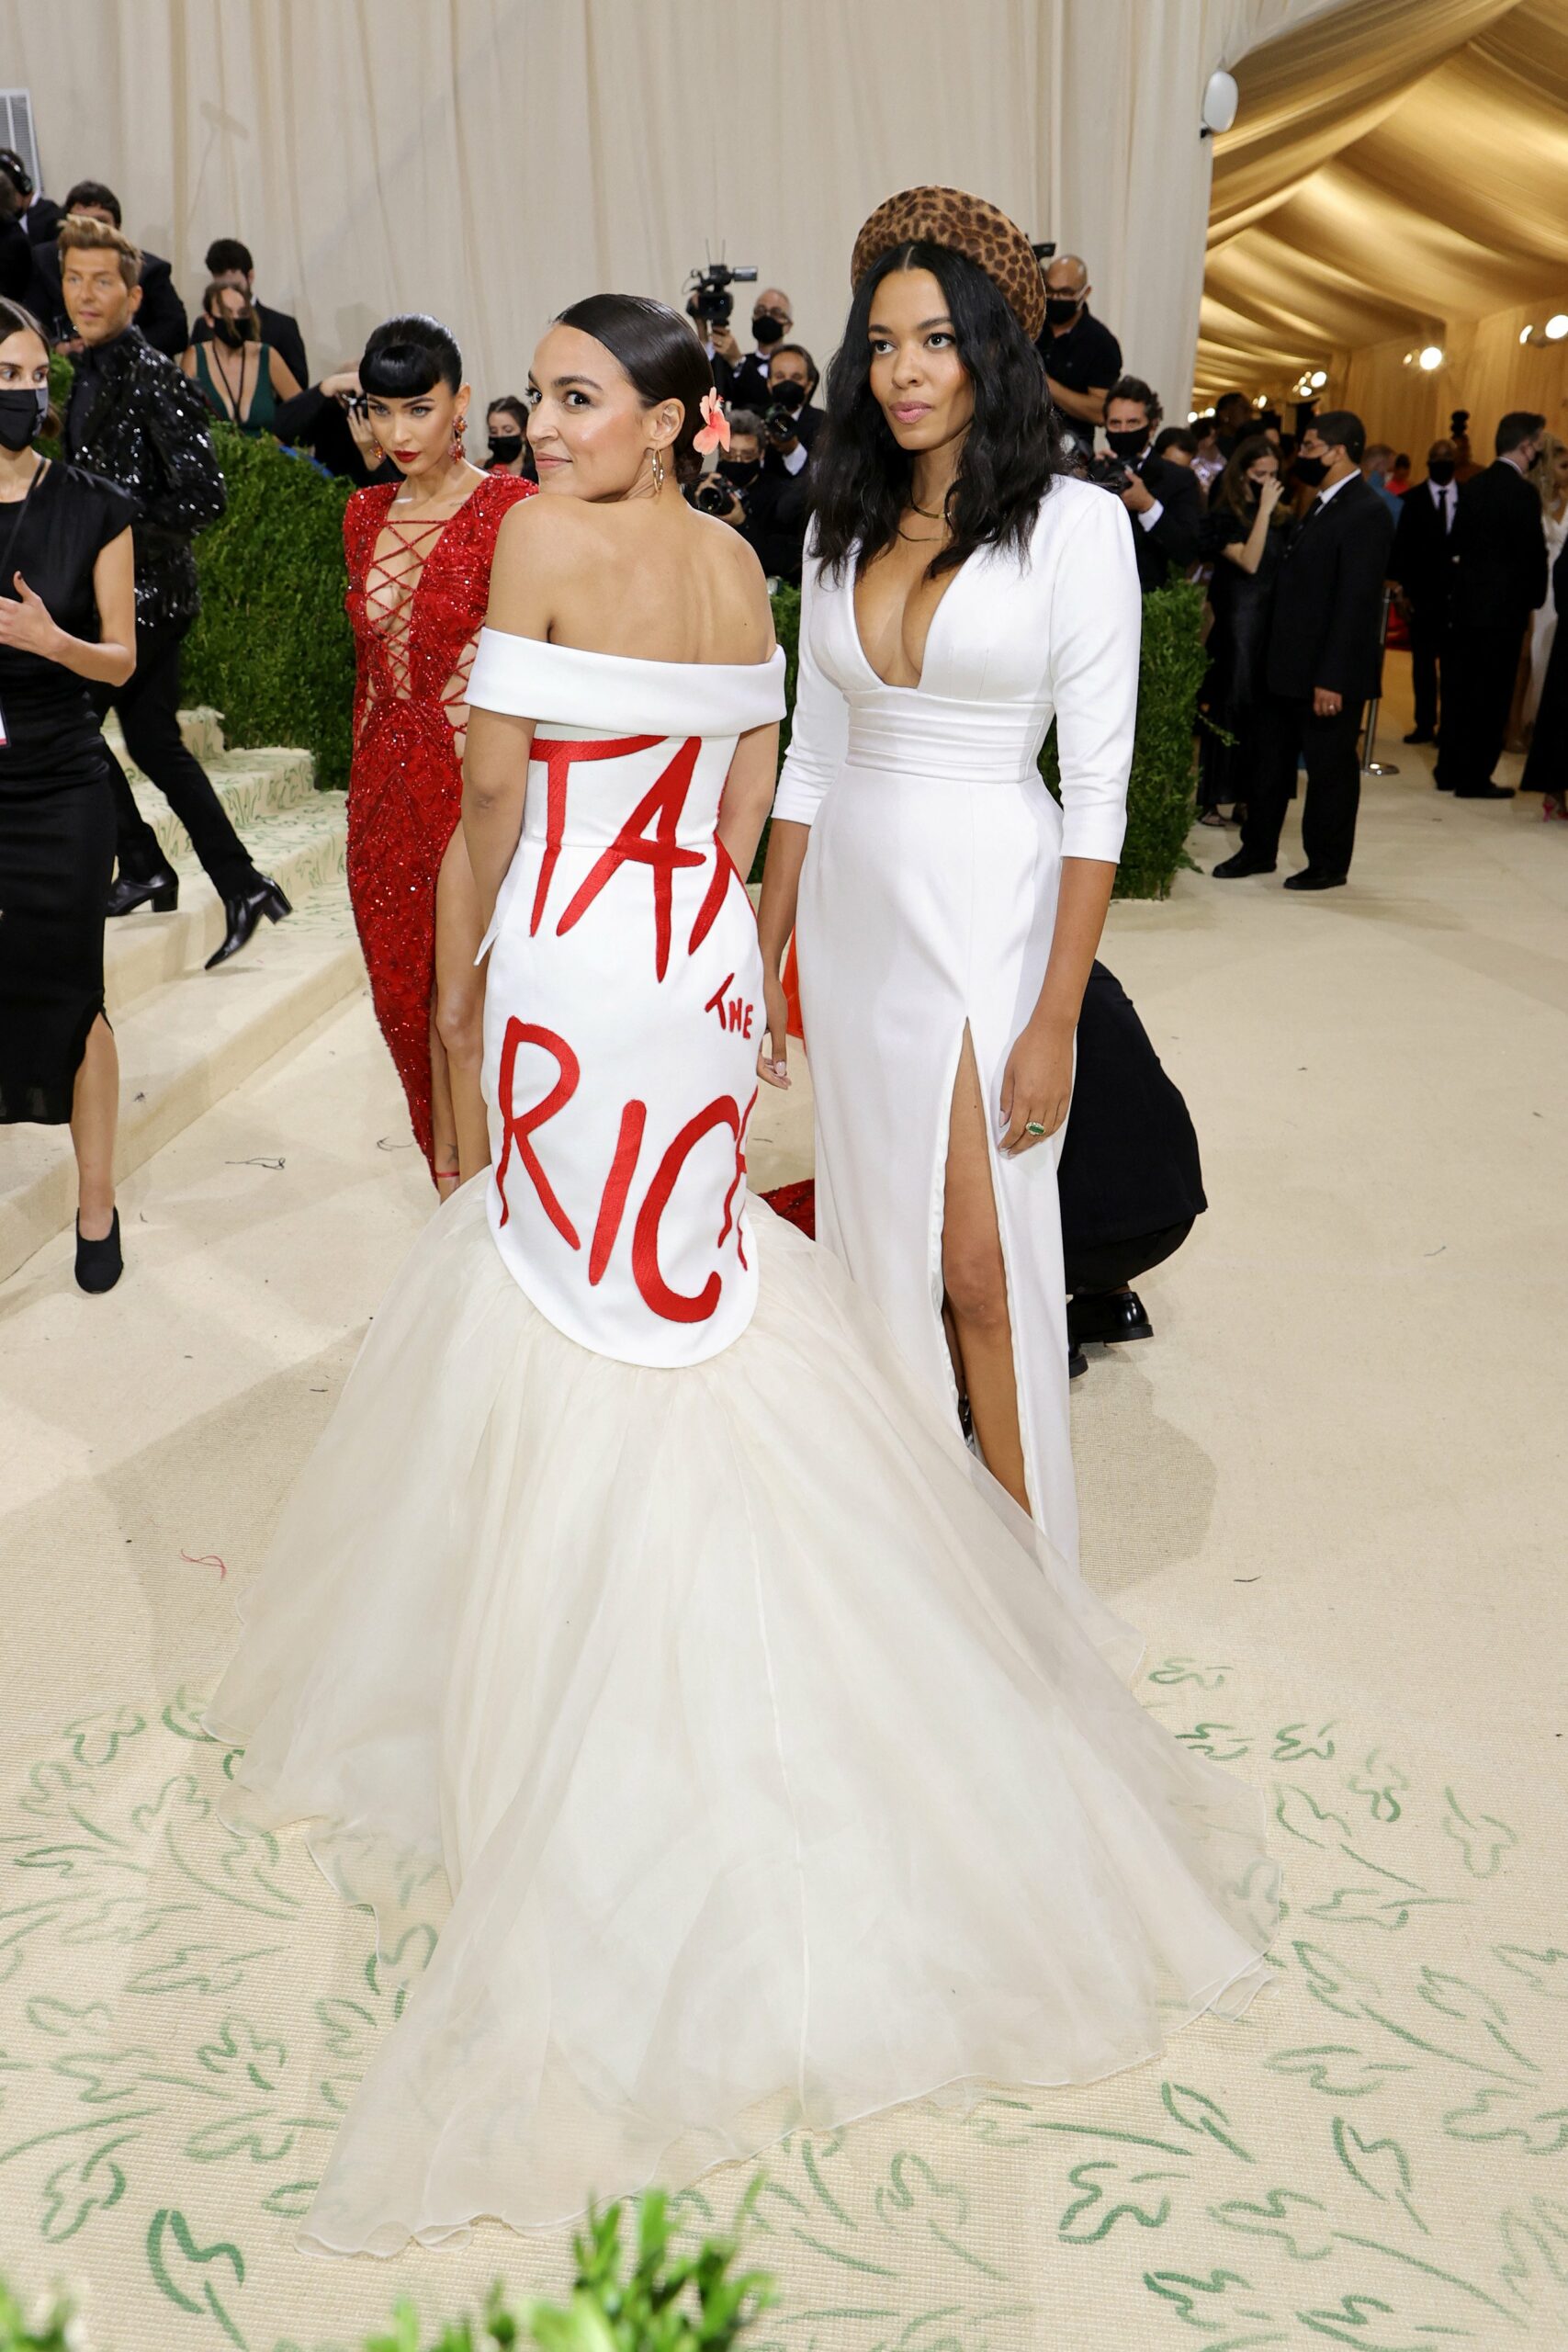 अलेक्झांड्रा, 'टॅक्स द रिच' ड्रेस परिधान करून, डाव्या विचारसरणीच्या श्रीमंत लोकांसोबत घुटमळत आहेत.(photo twitter)